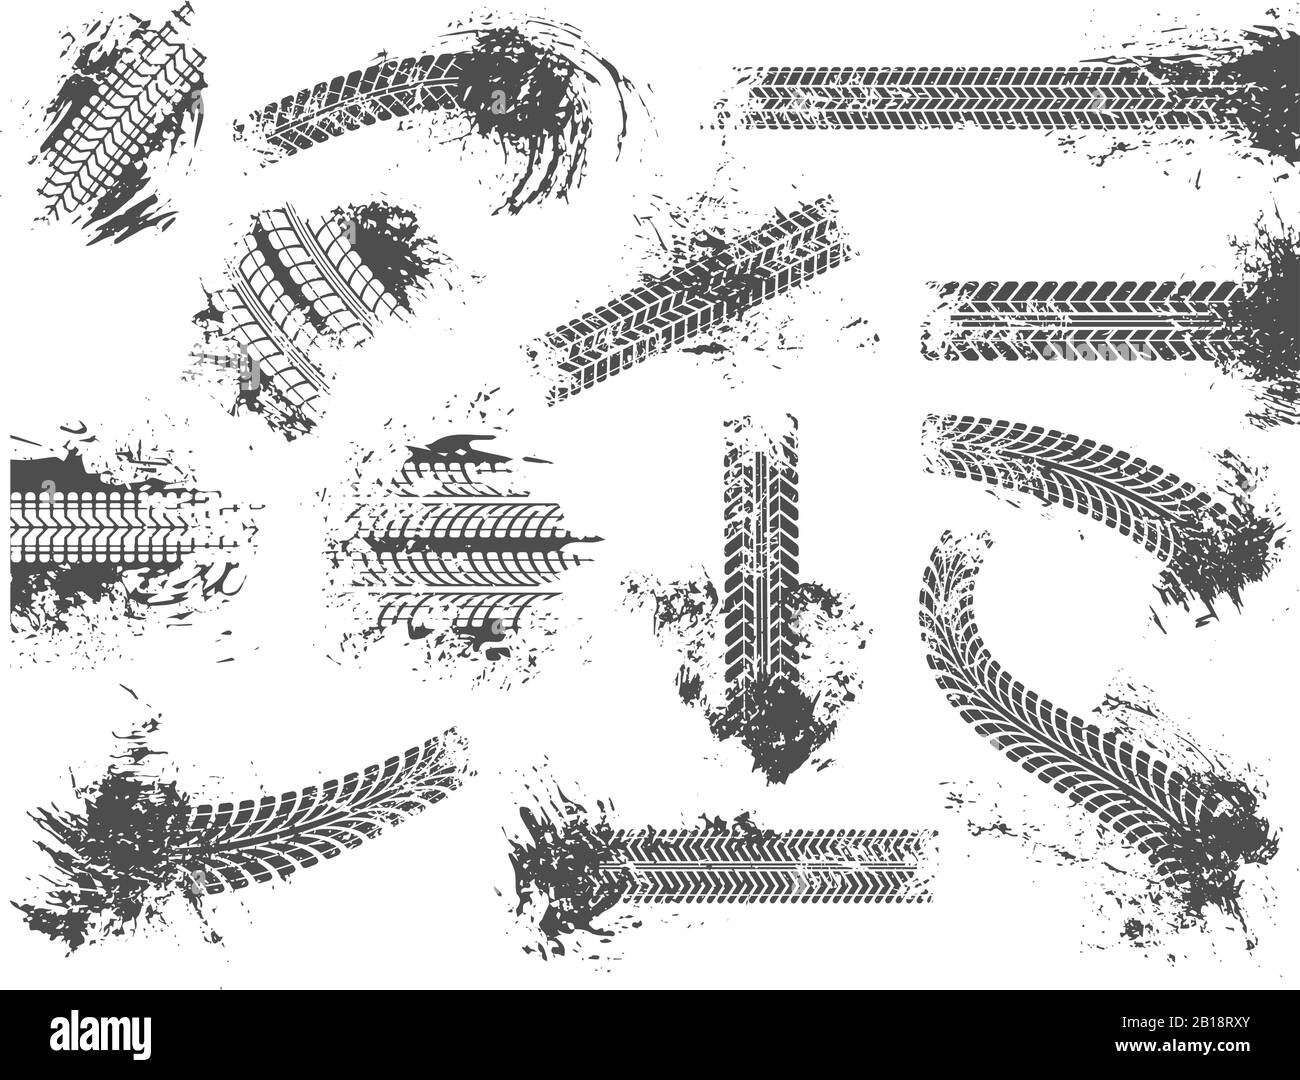 Verschmutzte Reifenspuren. Grunge Motor Race Track, Radreifen Protector Pattern und Dirt Wheels Imprint Texture Vector Illustration Set Stock Vektor